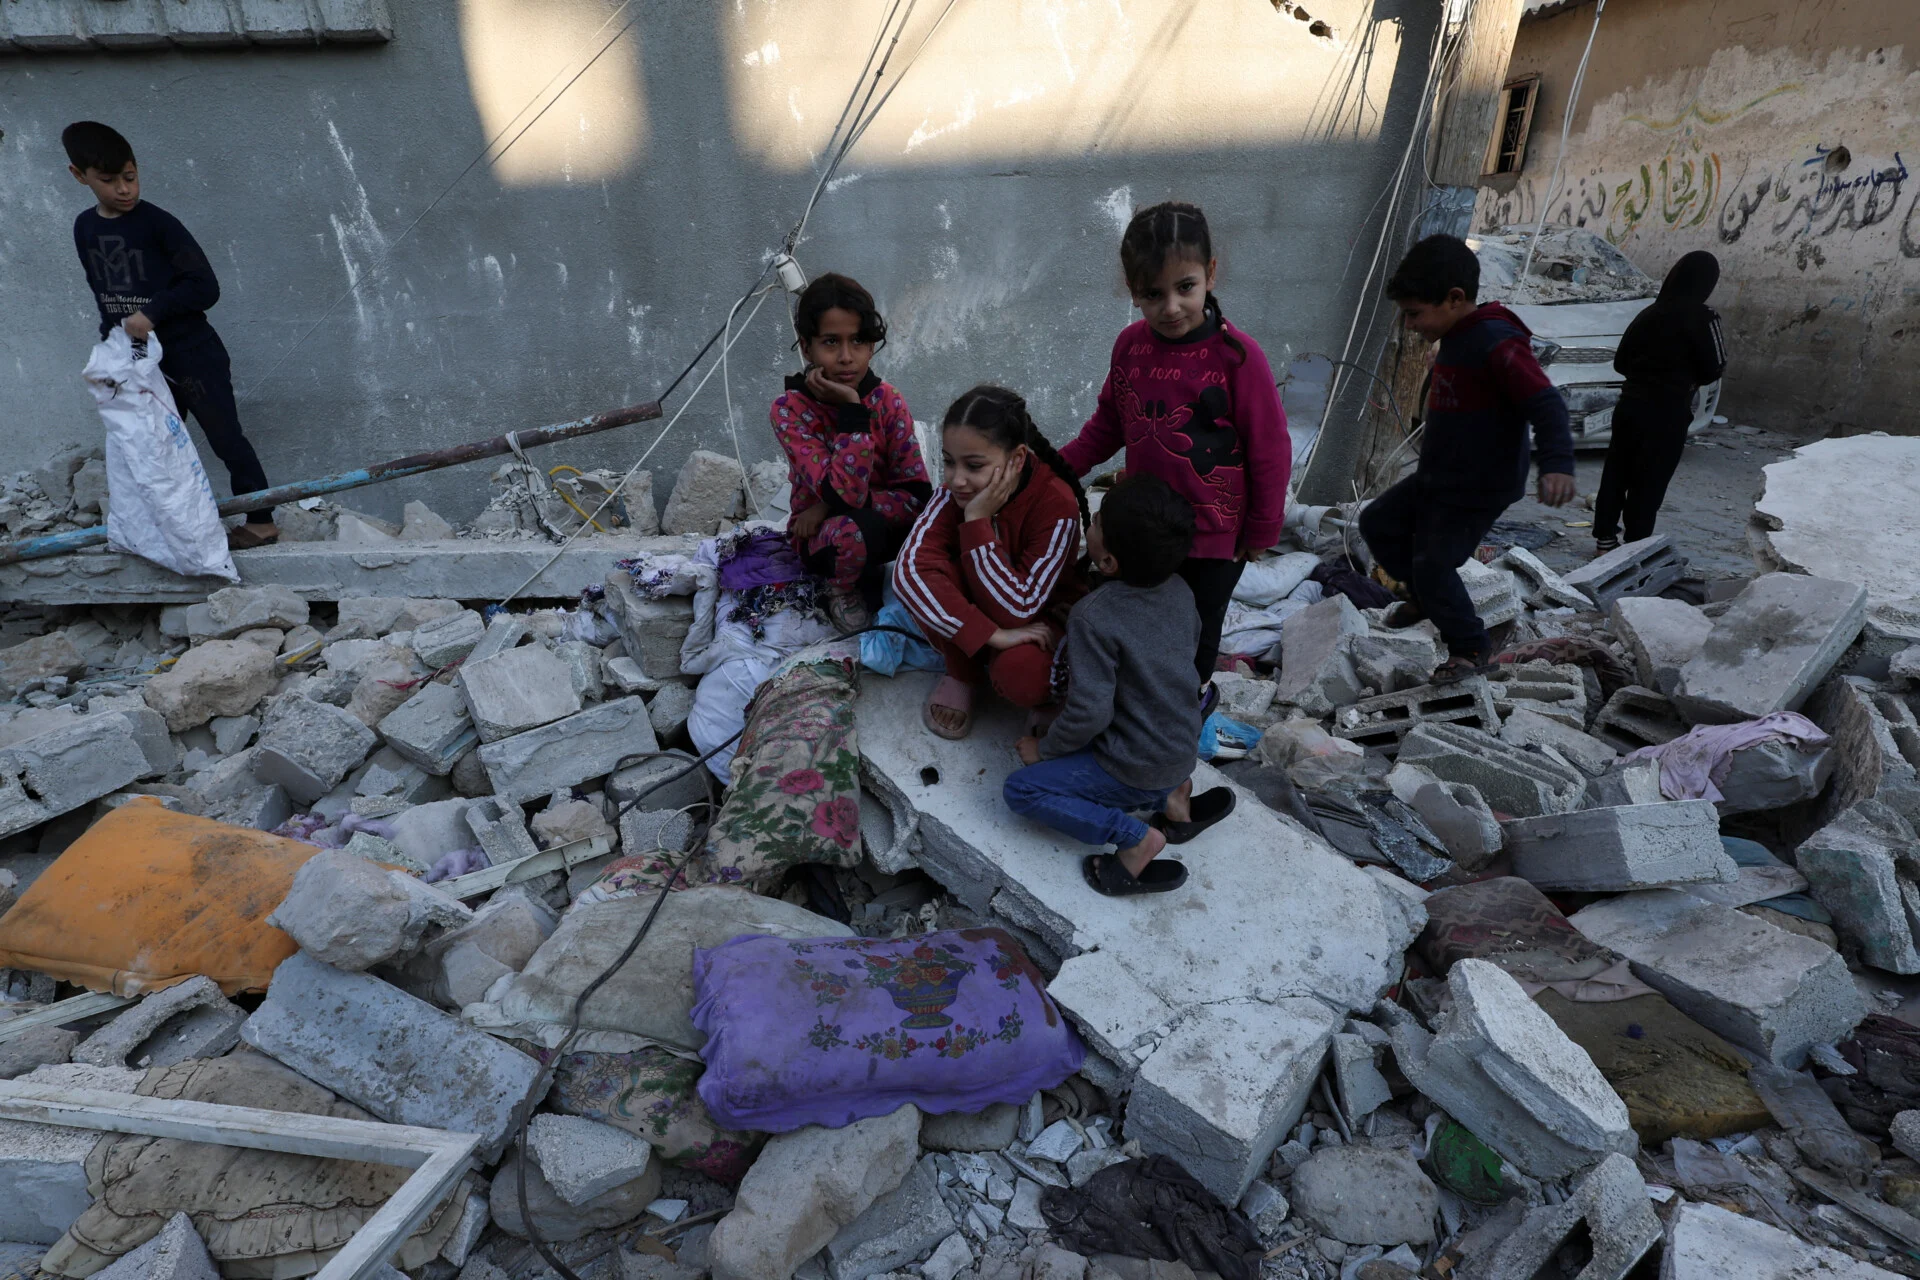 Πείνα και αρρώστιες: Ο θανατηφόρος συνδυασμός θα φέρει έκρηξη των θανάτων παιδιών στη Γάζα, λέει ο ΟΗΕ